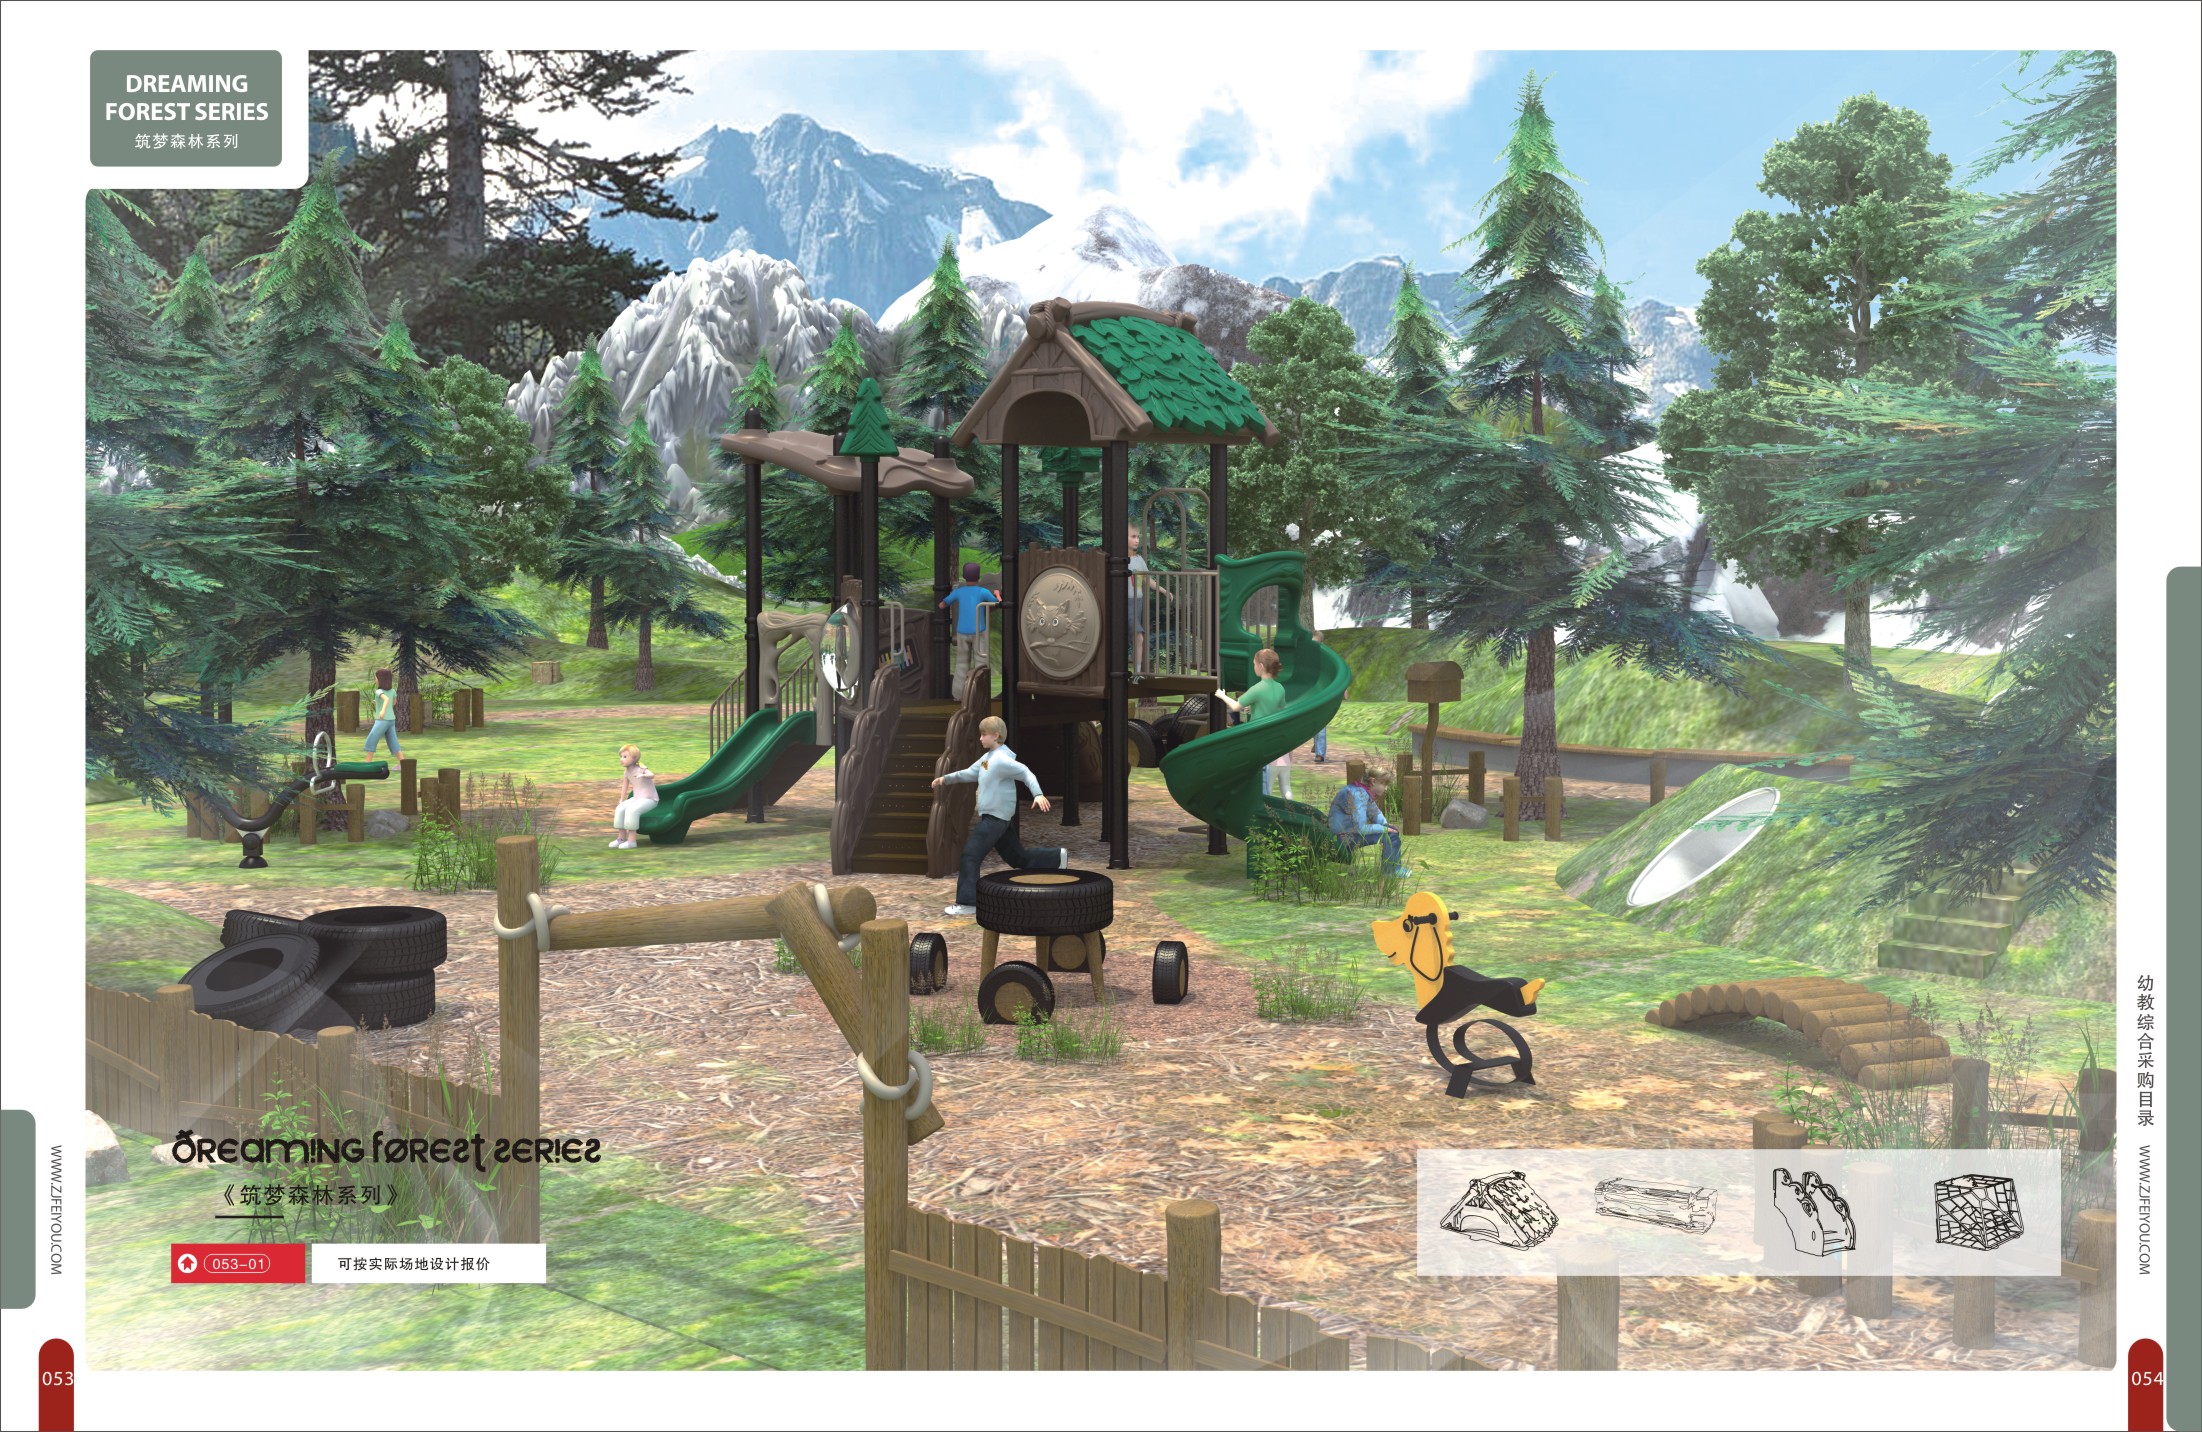 其他游艺设施 幼儿园投篮 大型户外玩具品质优良 滑梯 新型淘气城堡1